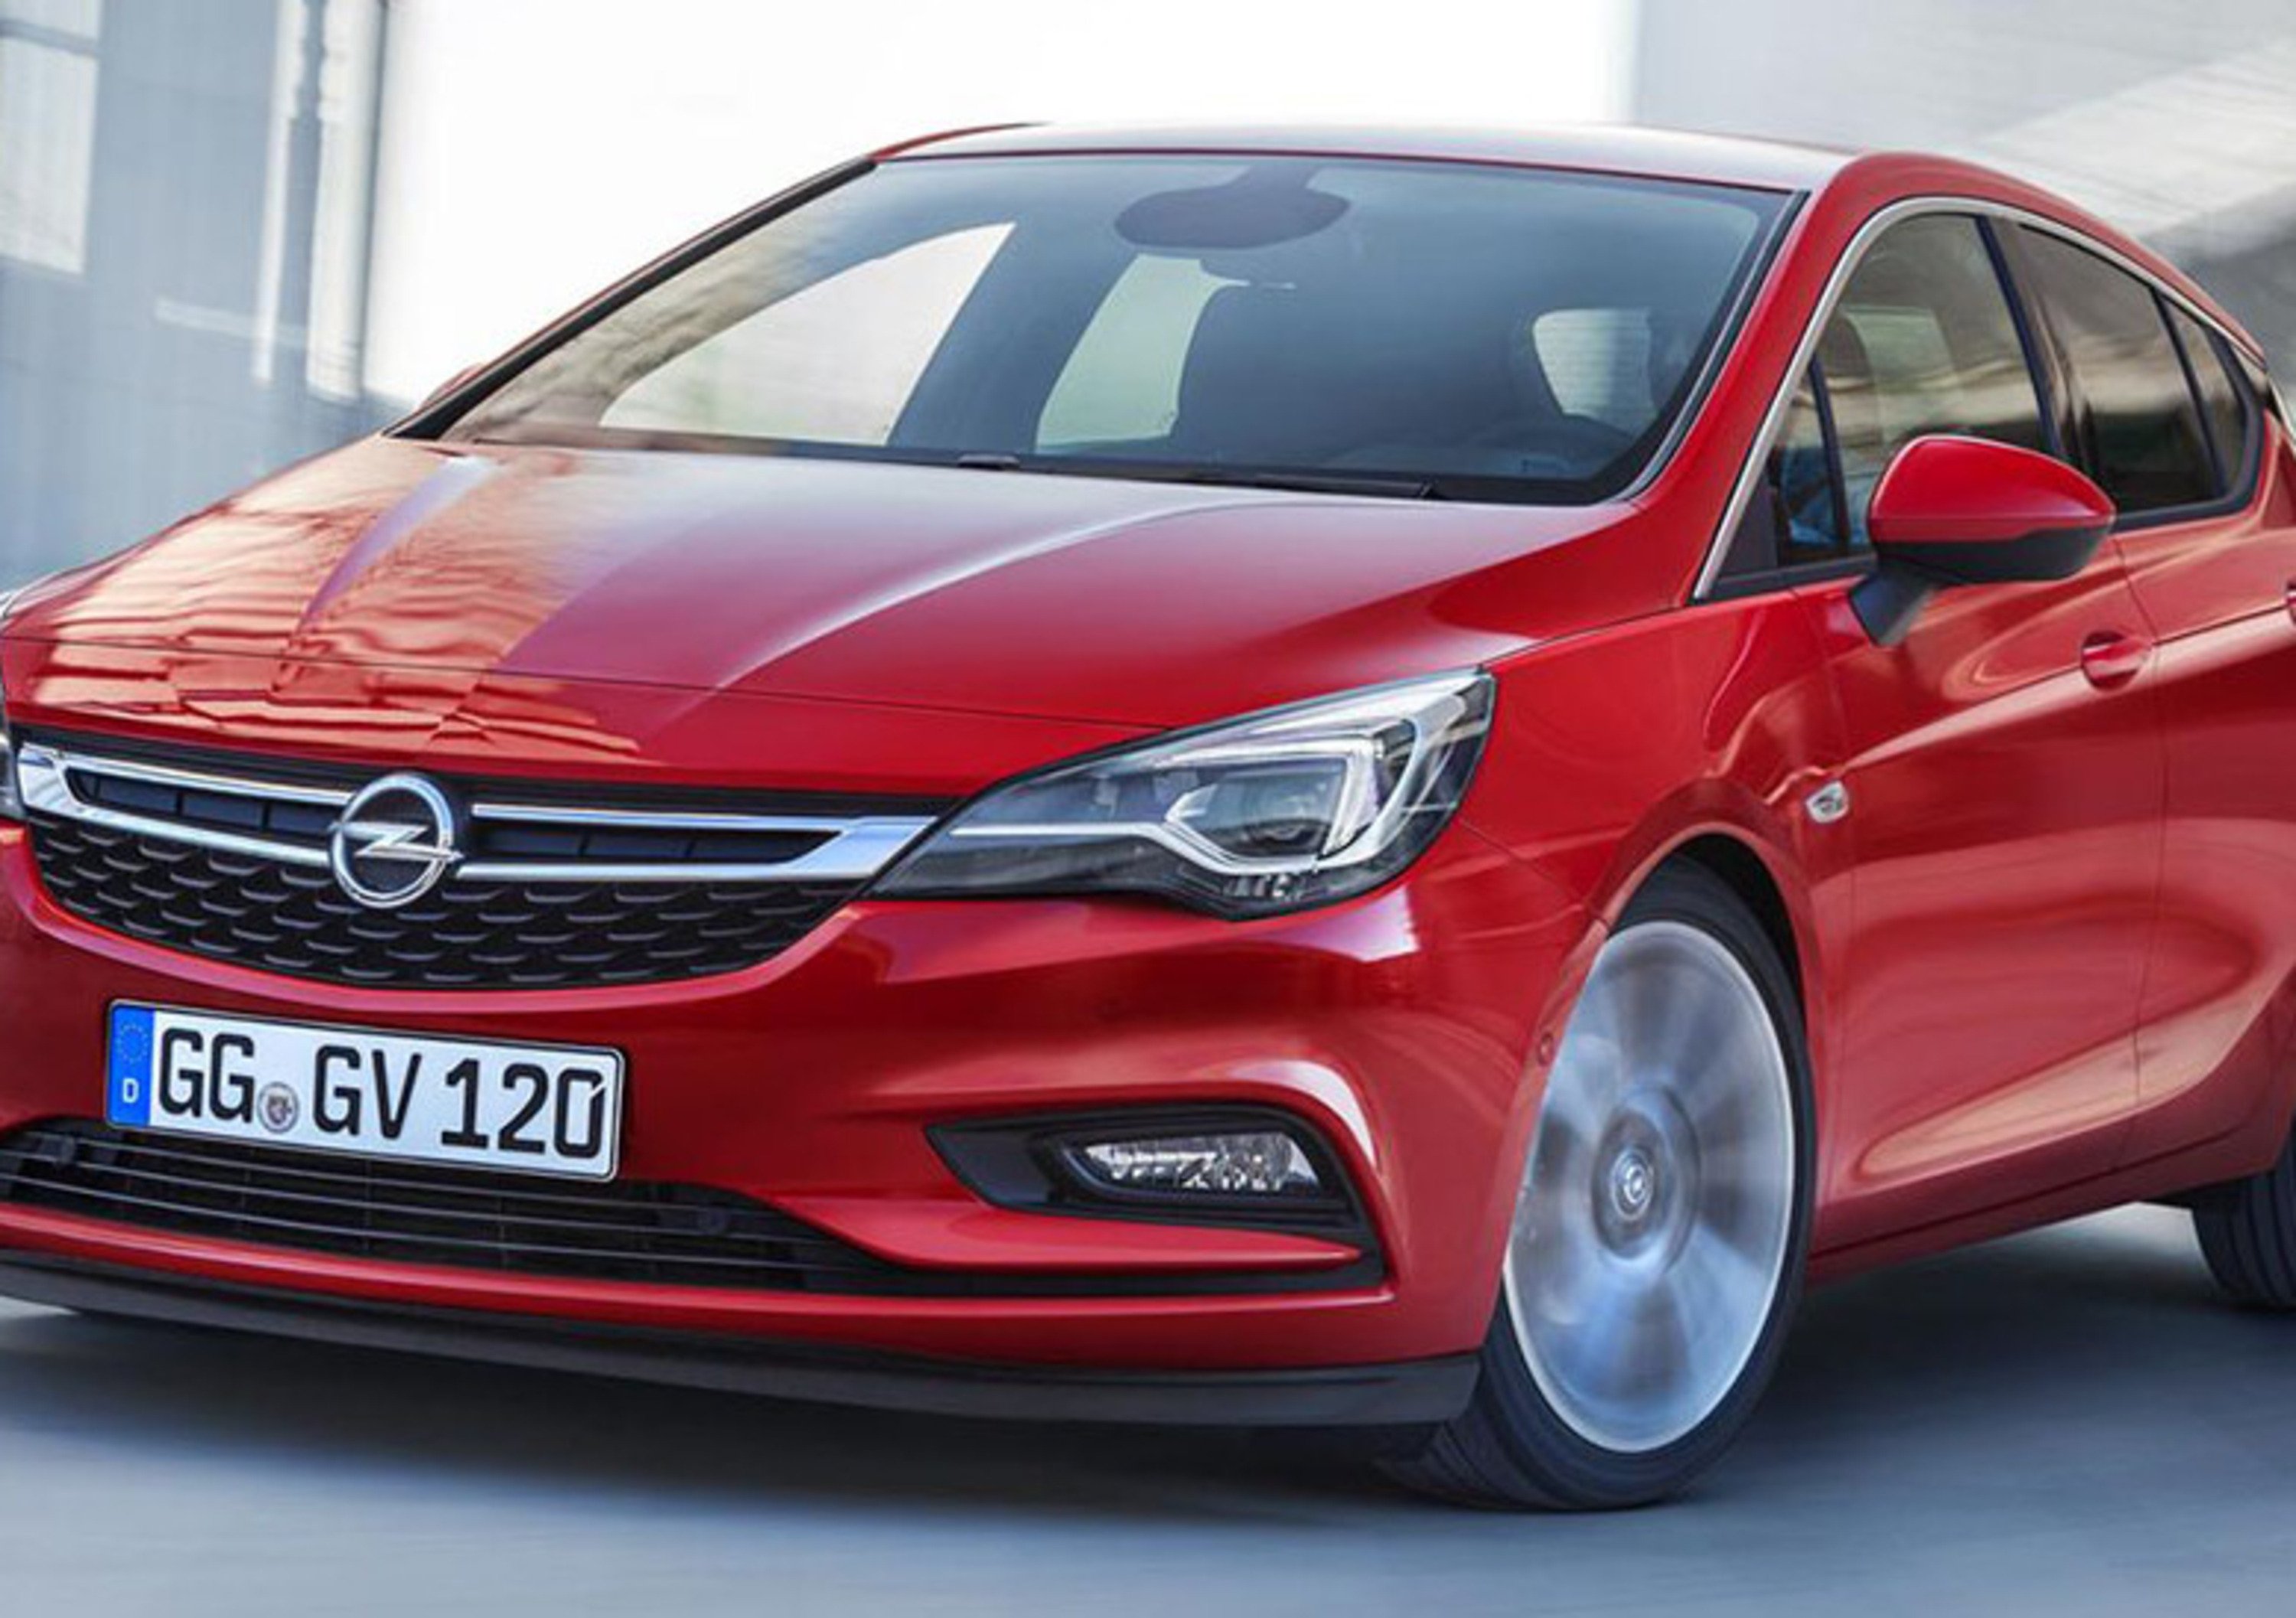 Nuova Opel Astra: ecco tutte le foto e le informazioni ufficiali